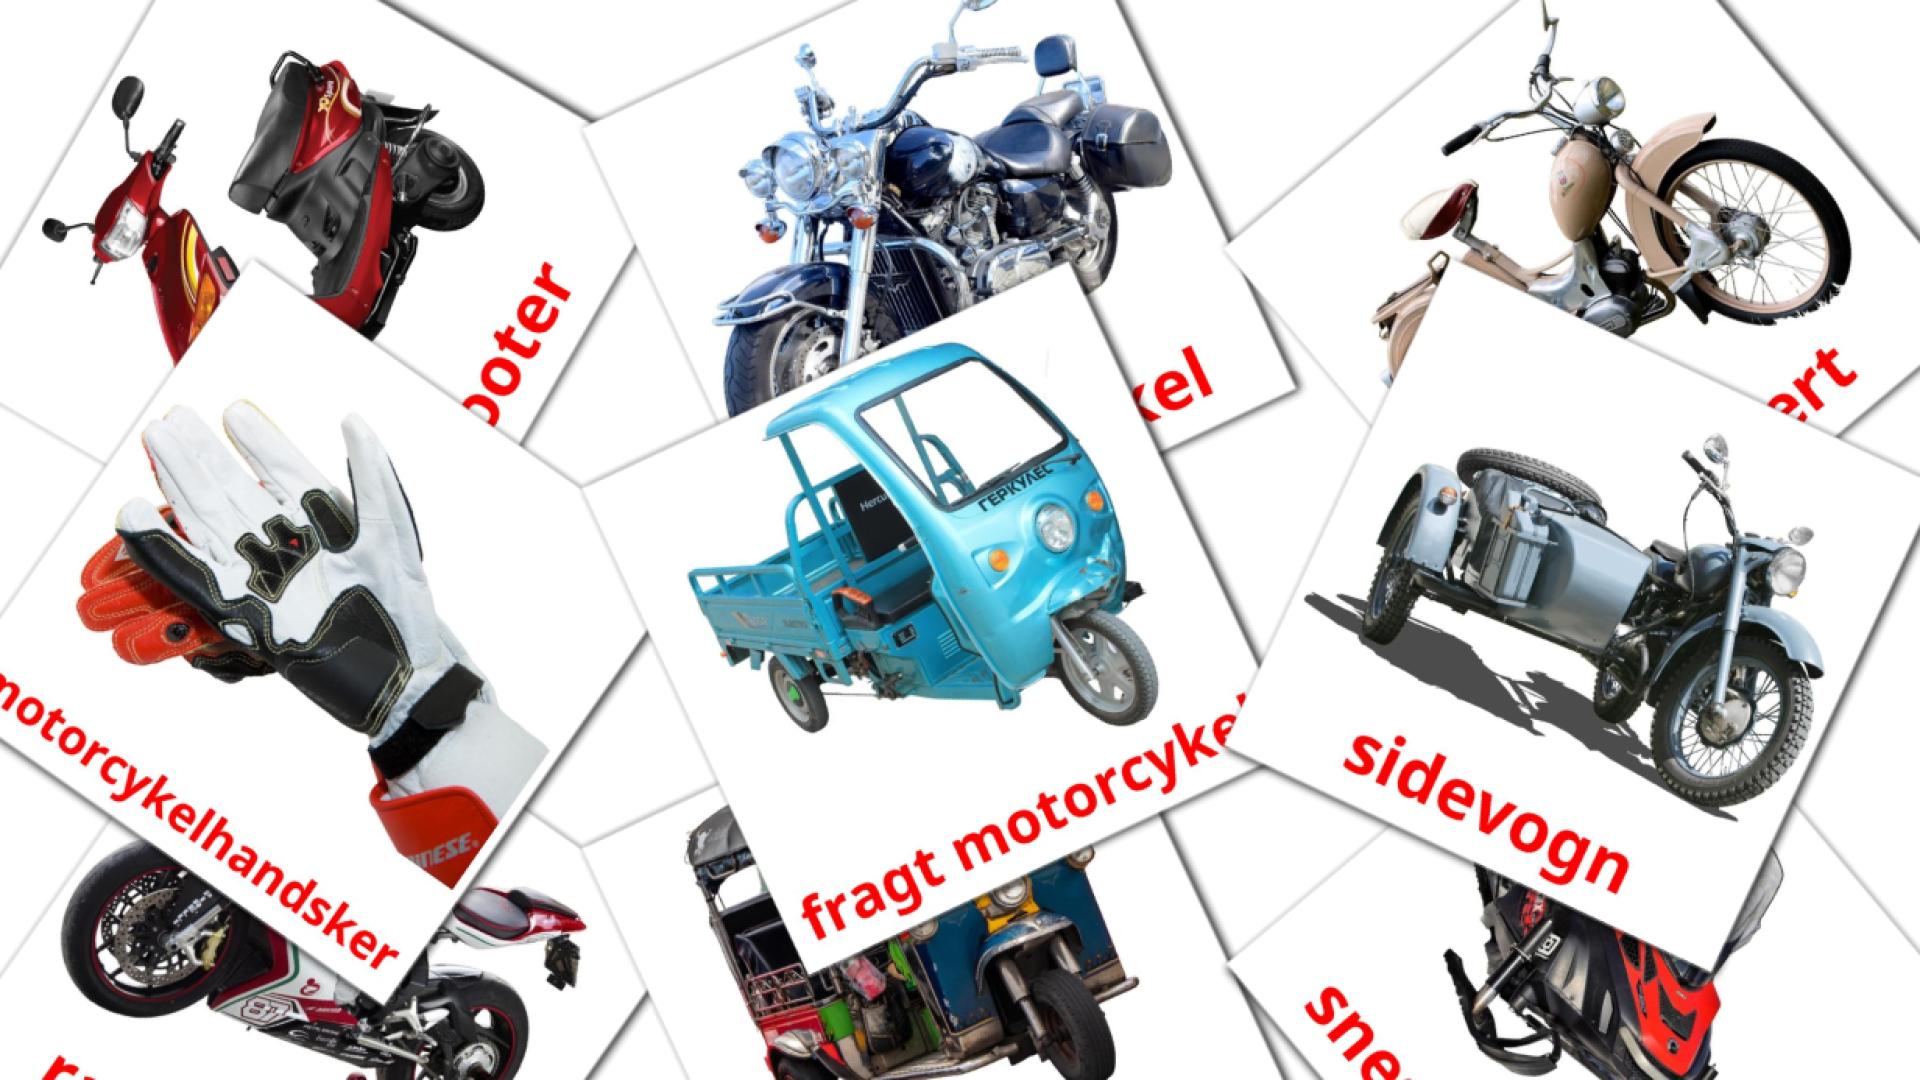 12 Imagiers Motorcykler